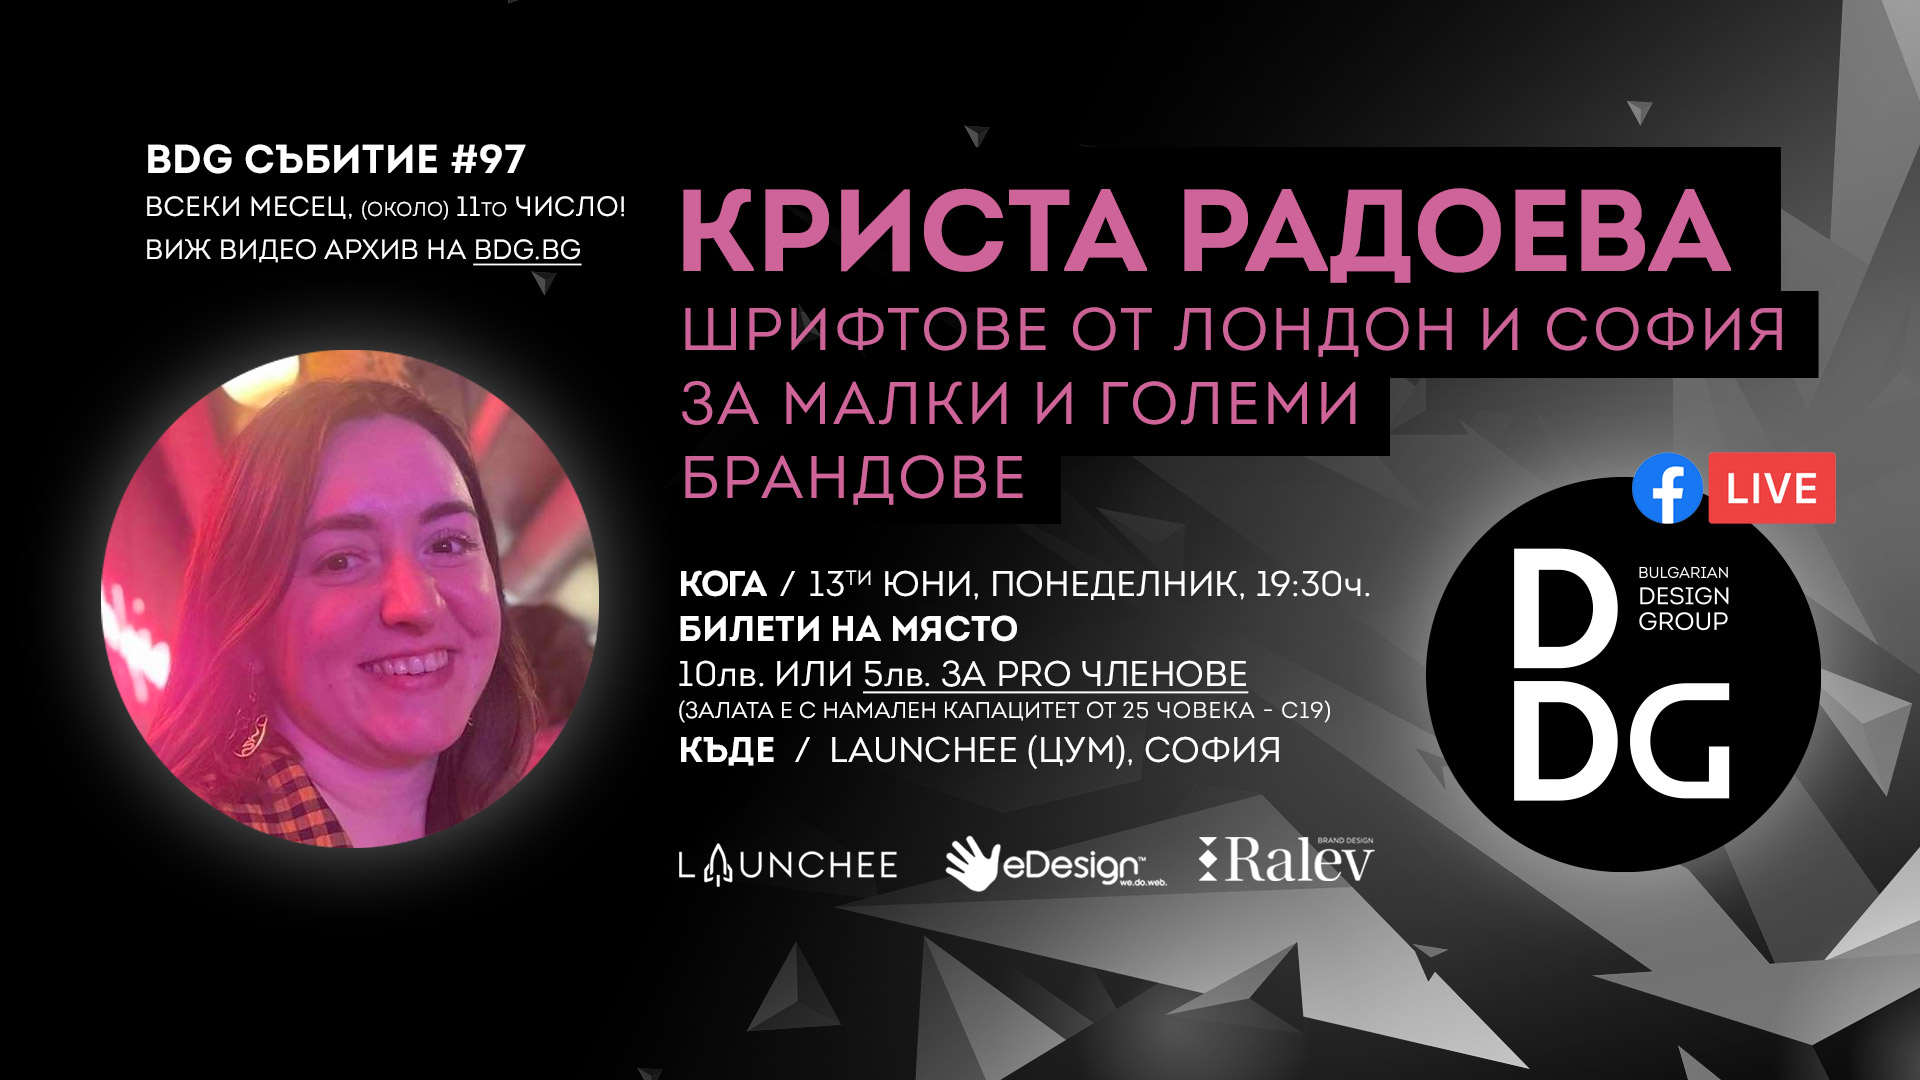 Месечно дизайн събитие с гост Криста Радоева - БДГ 97